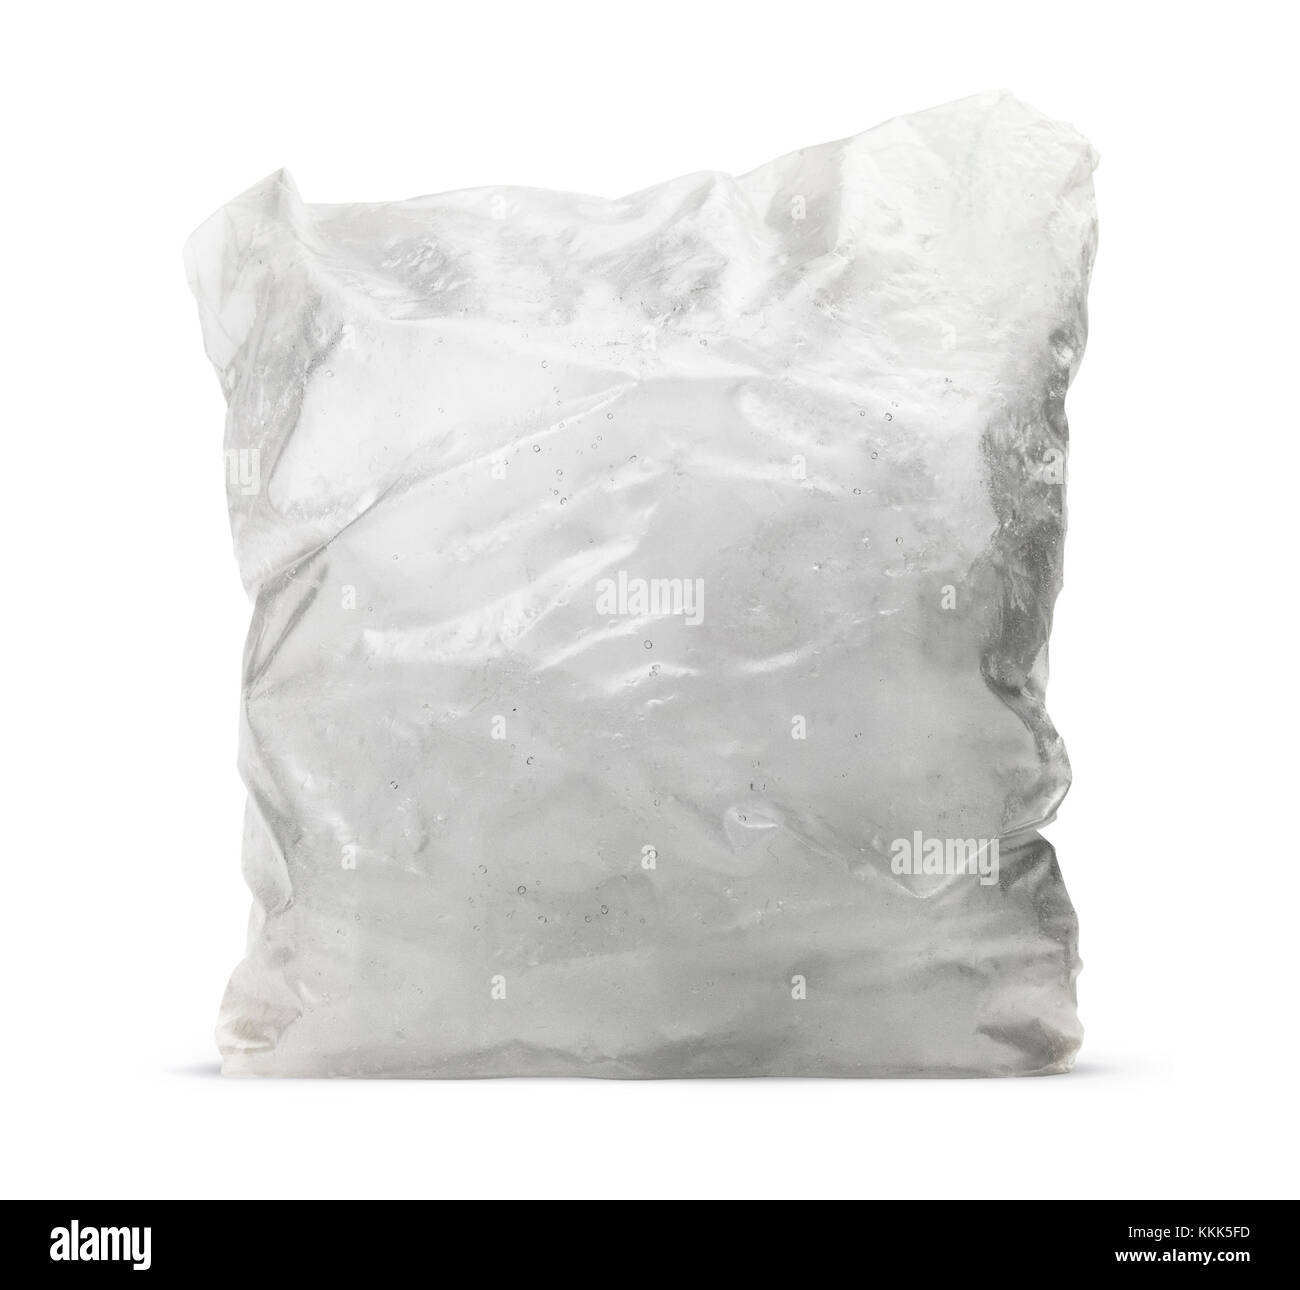 Isolierte Eiswürfel im Beutel auf weißem Hintergrund Stockfoto